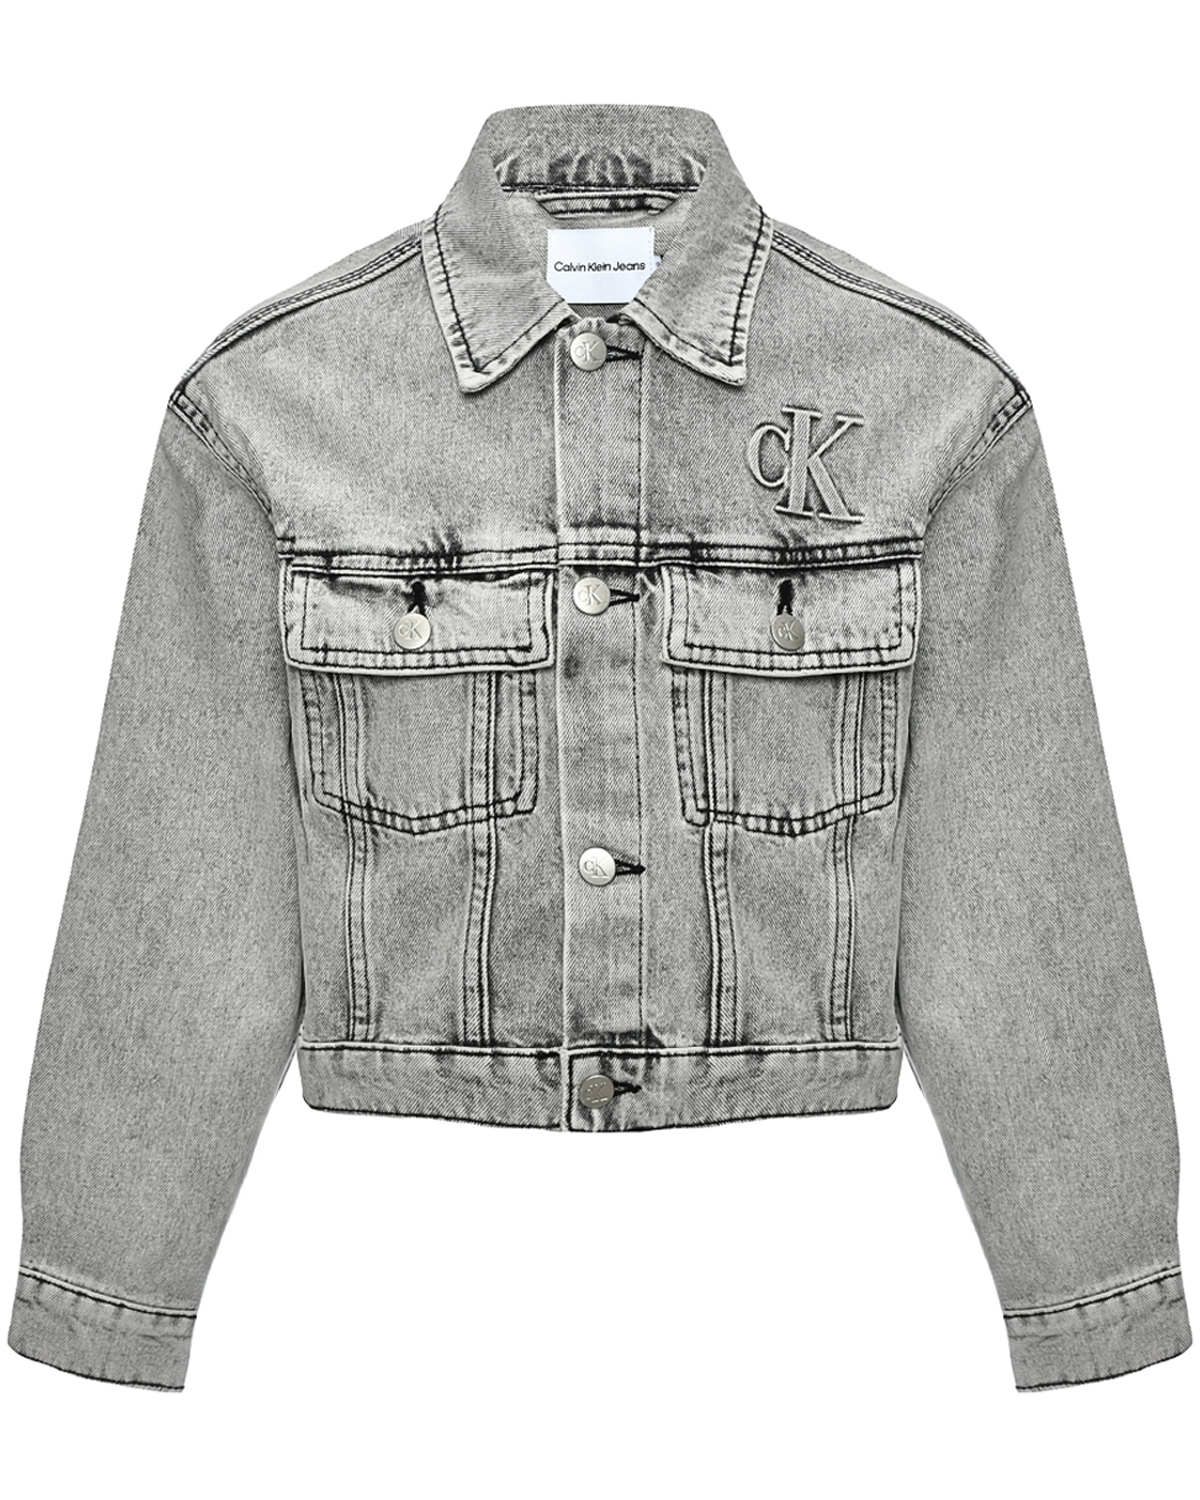 Укороченная джинсовая куртка Calvin Klein, размер 164, цвет серый